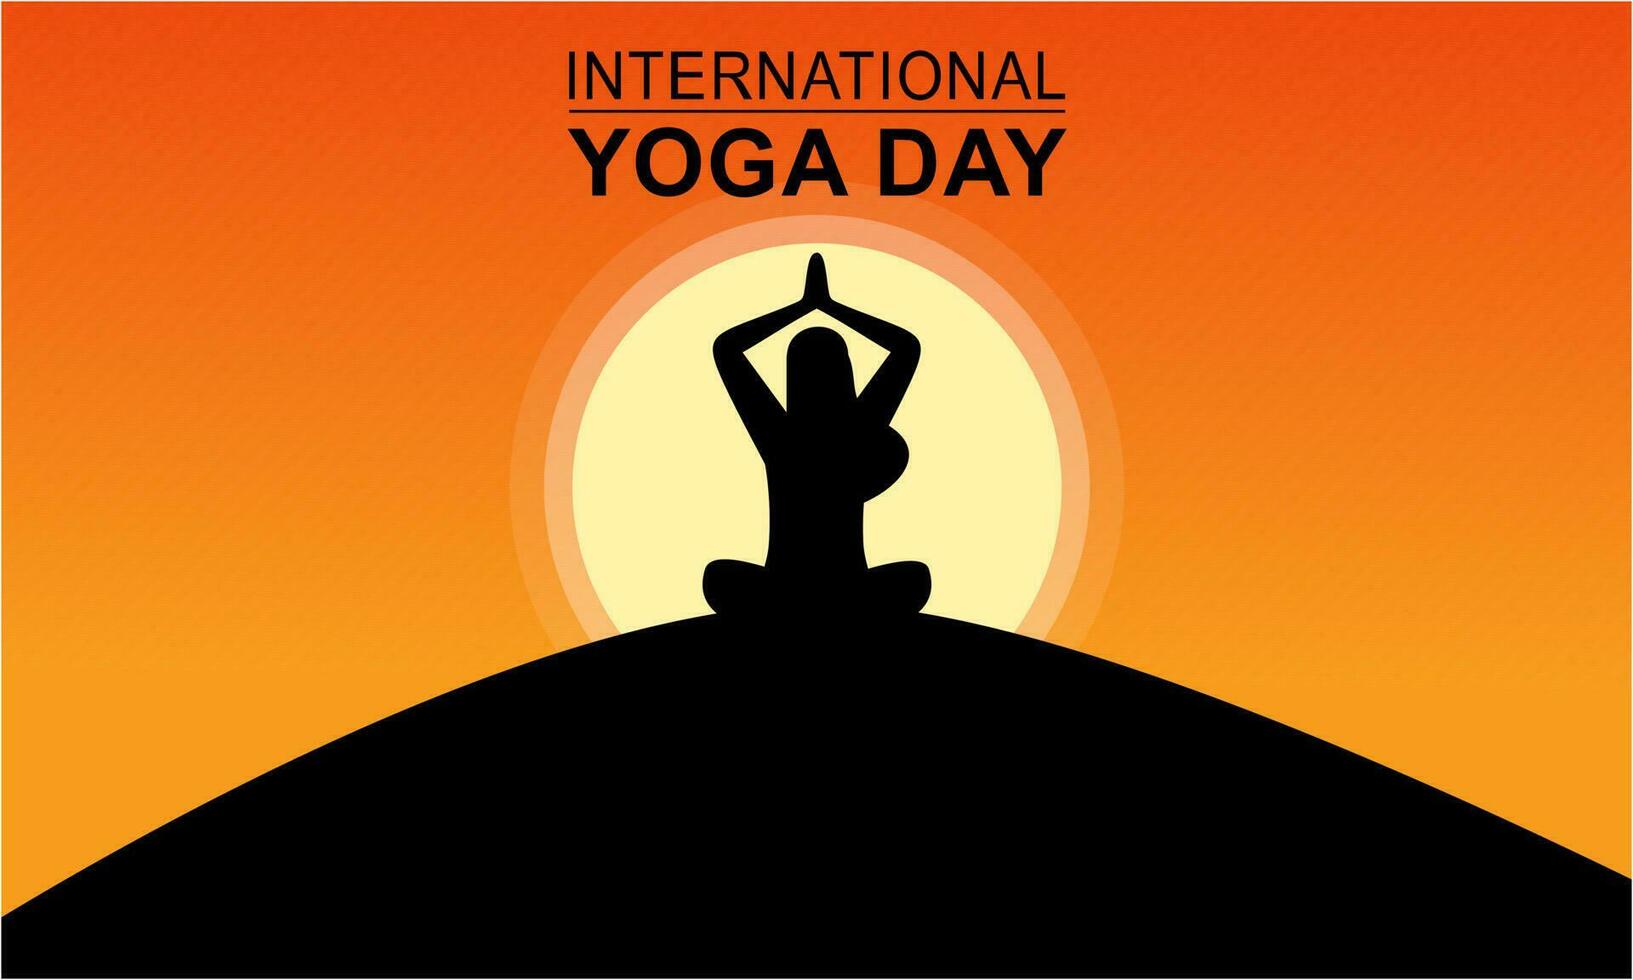 International Tag von Yoga Illustration. Yoga Körper Haltung vektor